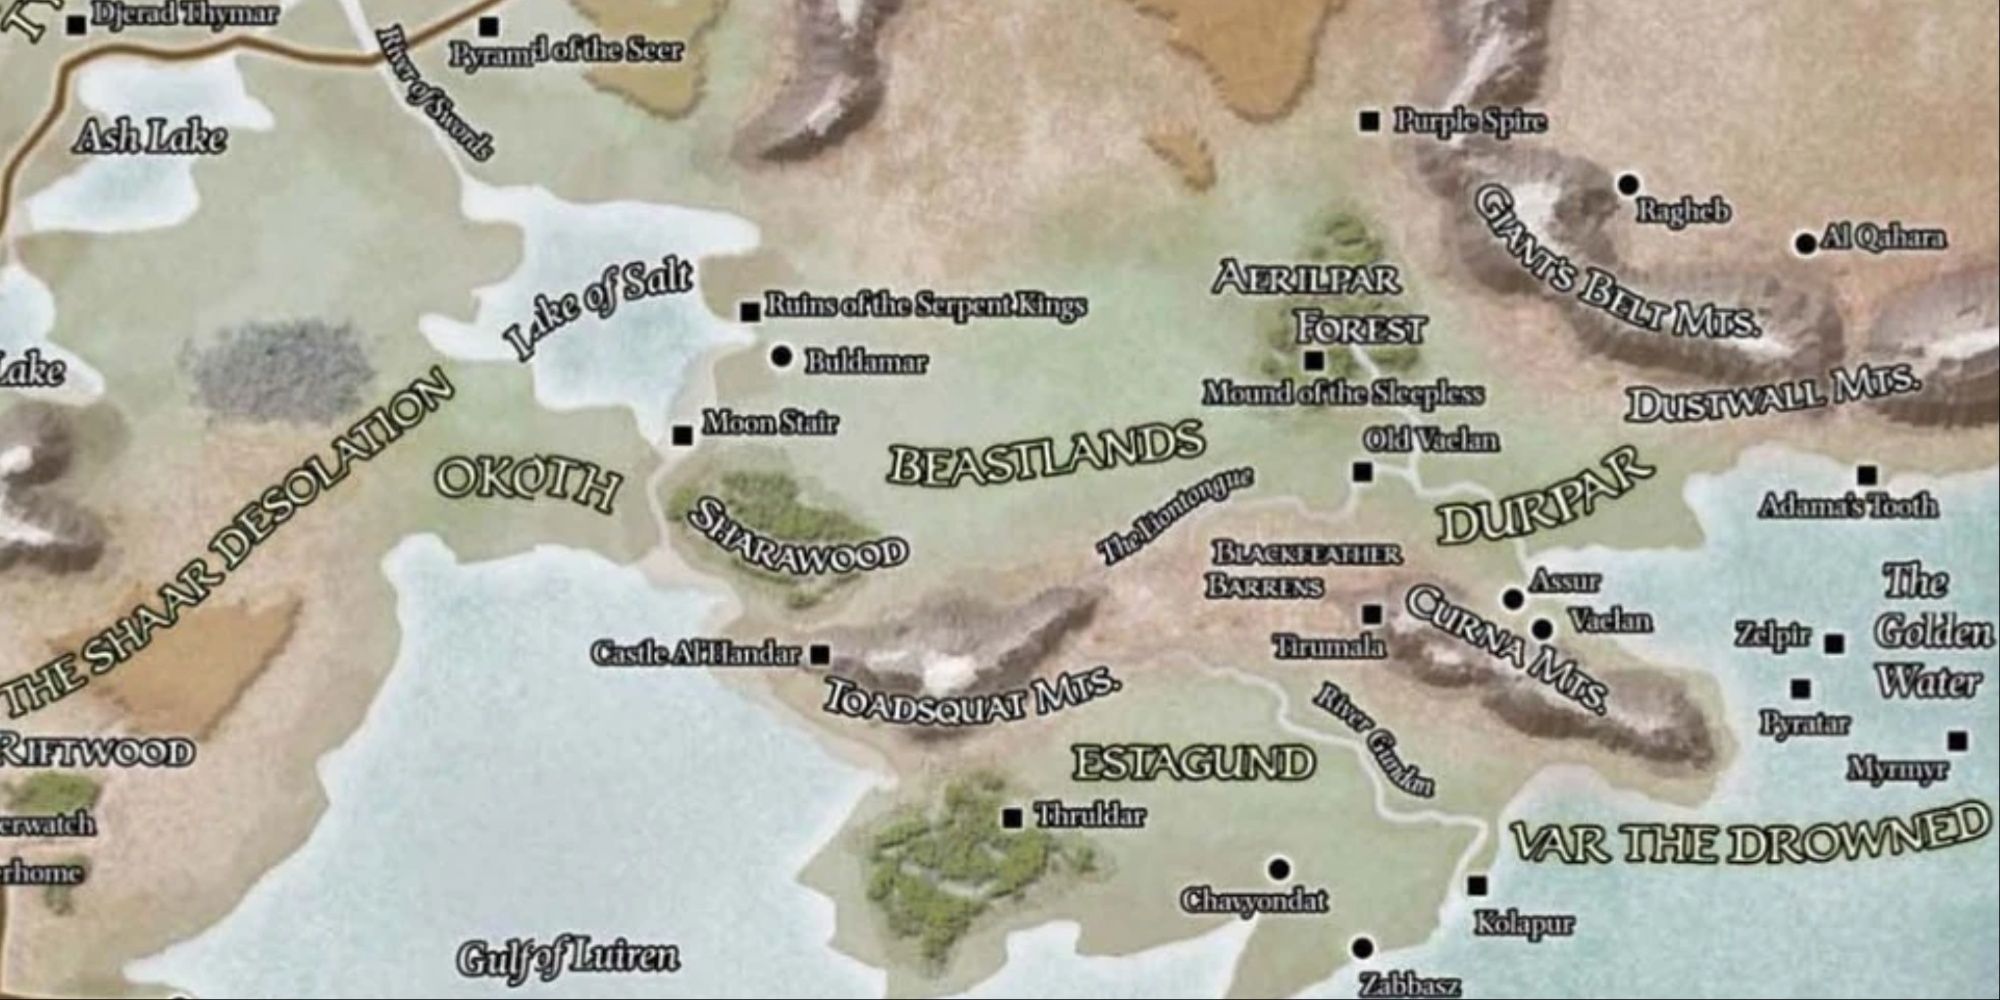 Map included in the Forgotten Realms Campaign Guide Rob Lazzaretti